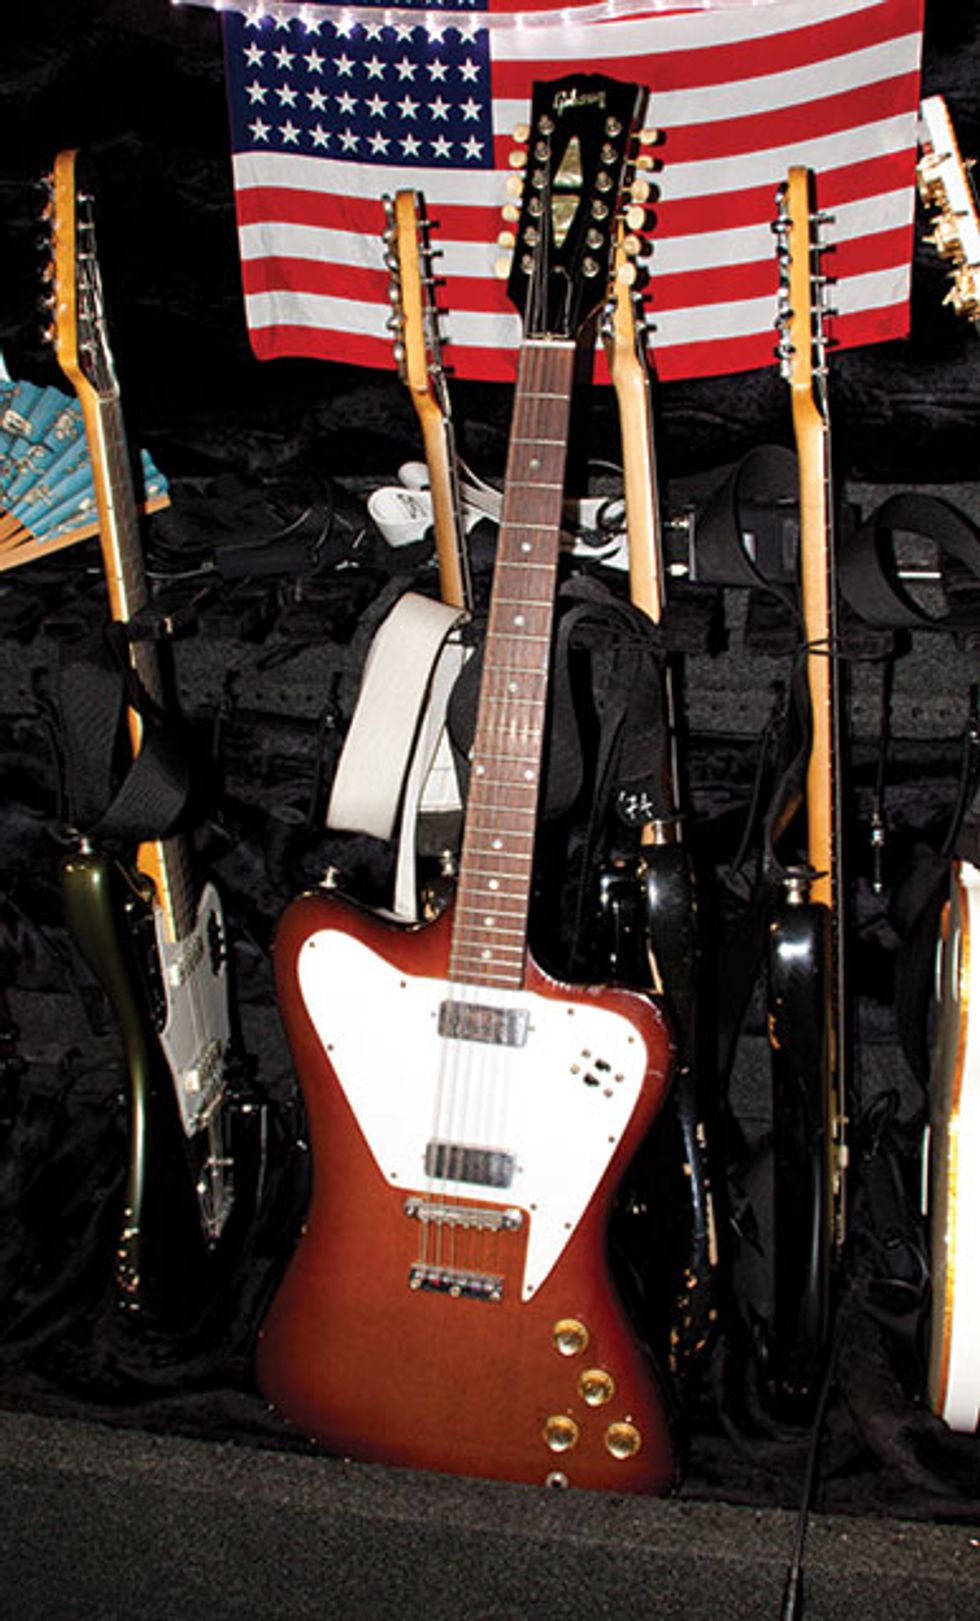 August: Gear of the Month: 1966 Gibson Firebird V-12